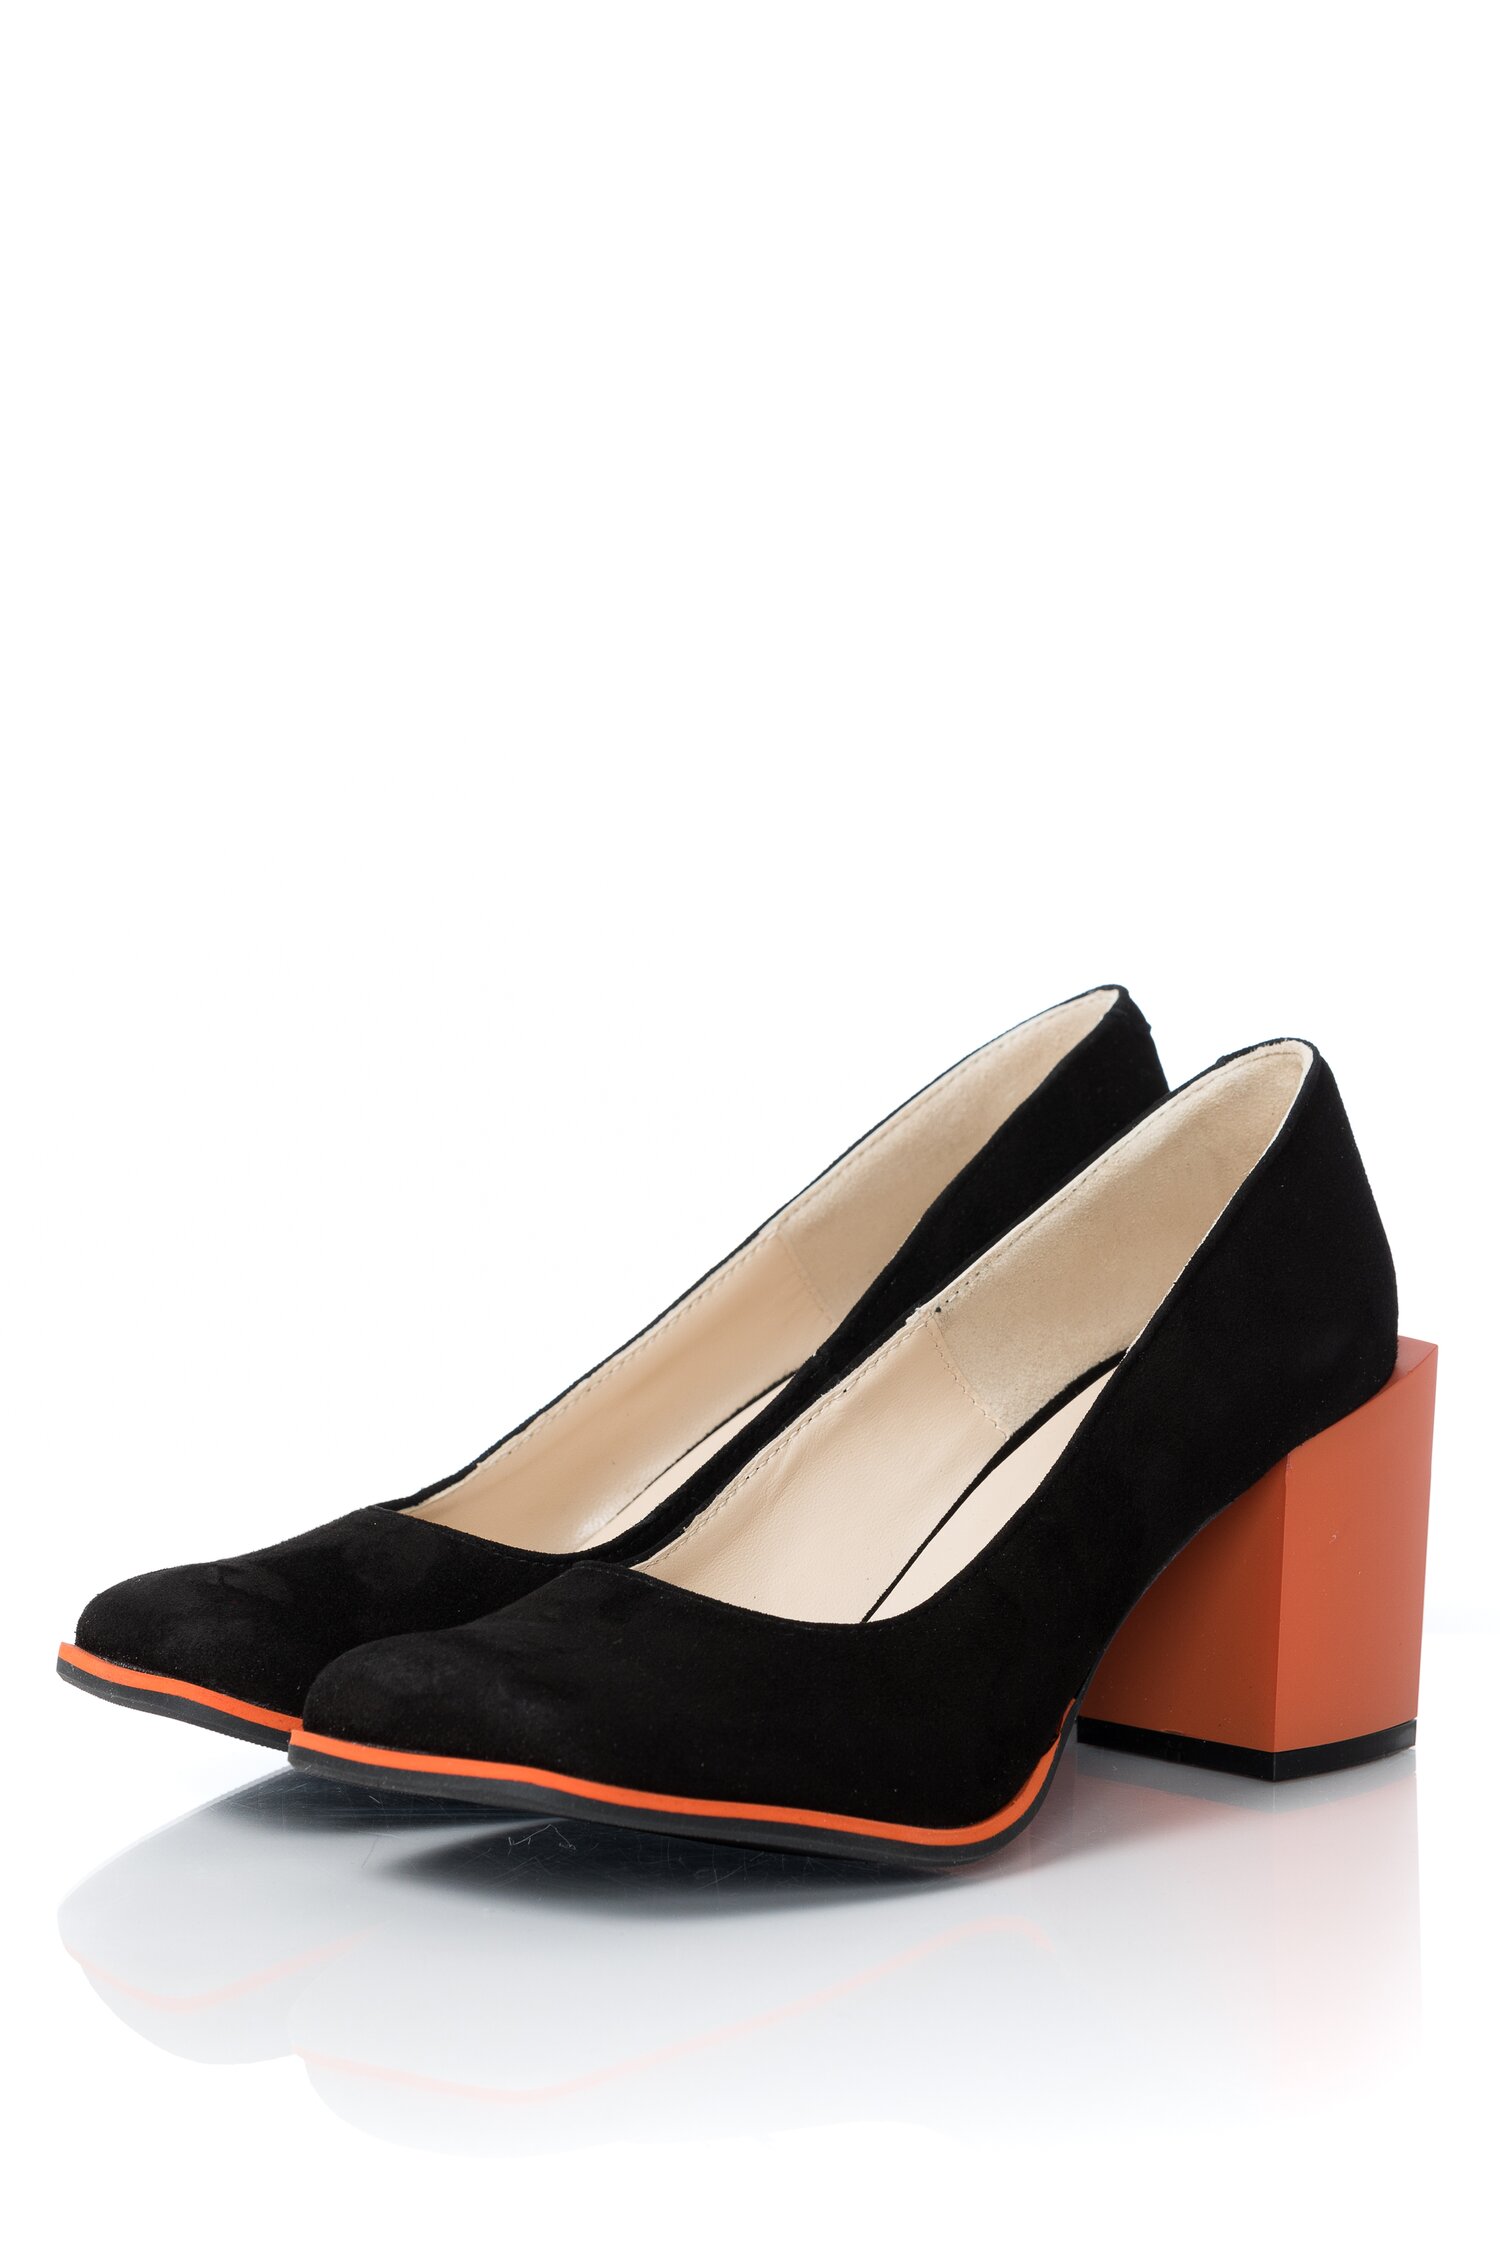 Pantofi Tania negri cu toc portocaliu dyfashion.ro imagine megaplaza.ro